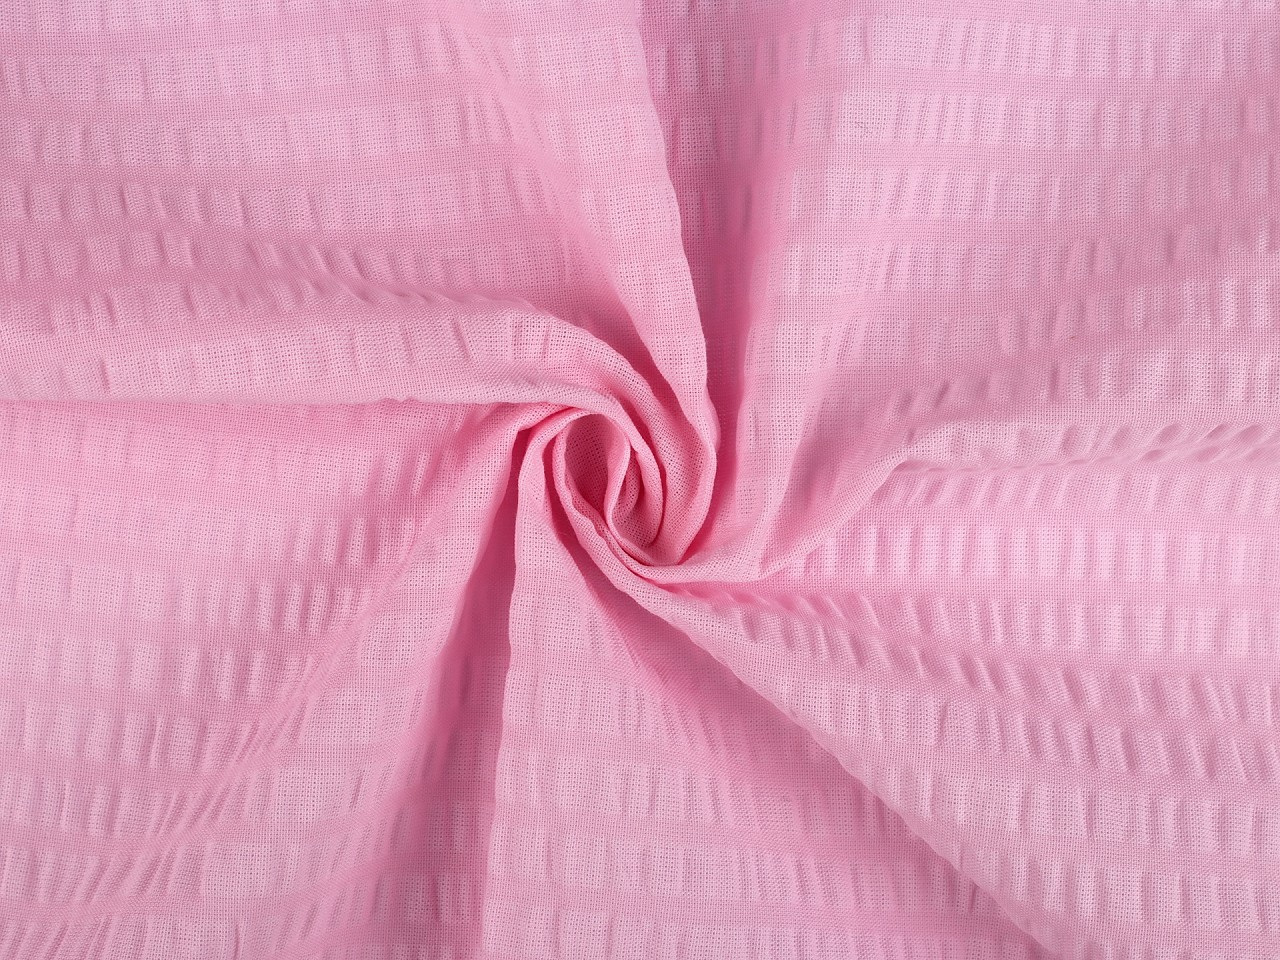 Bavlněný krep jednobarevný, barva 3 (7) růžová střední